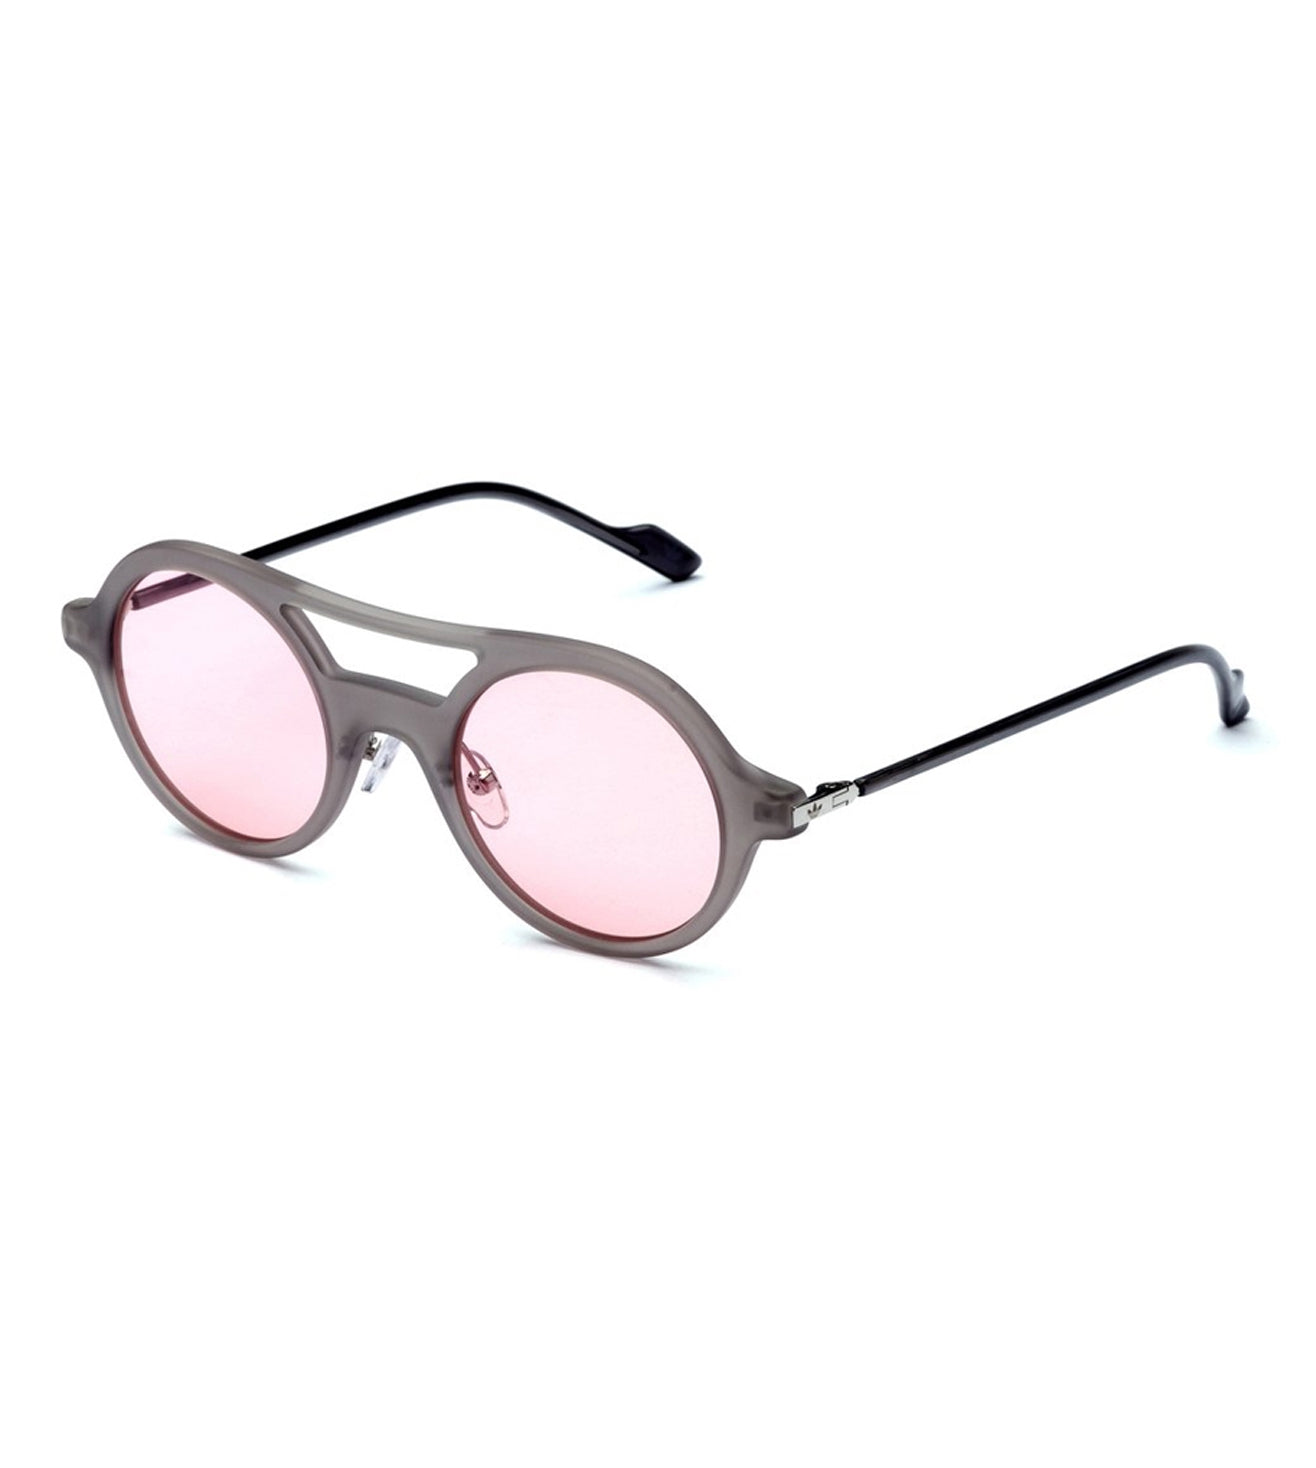 Adidas Originals Unisex Pink Round Sunglasses